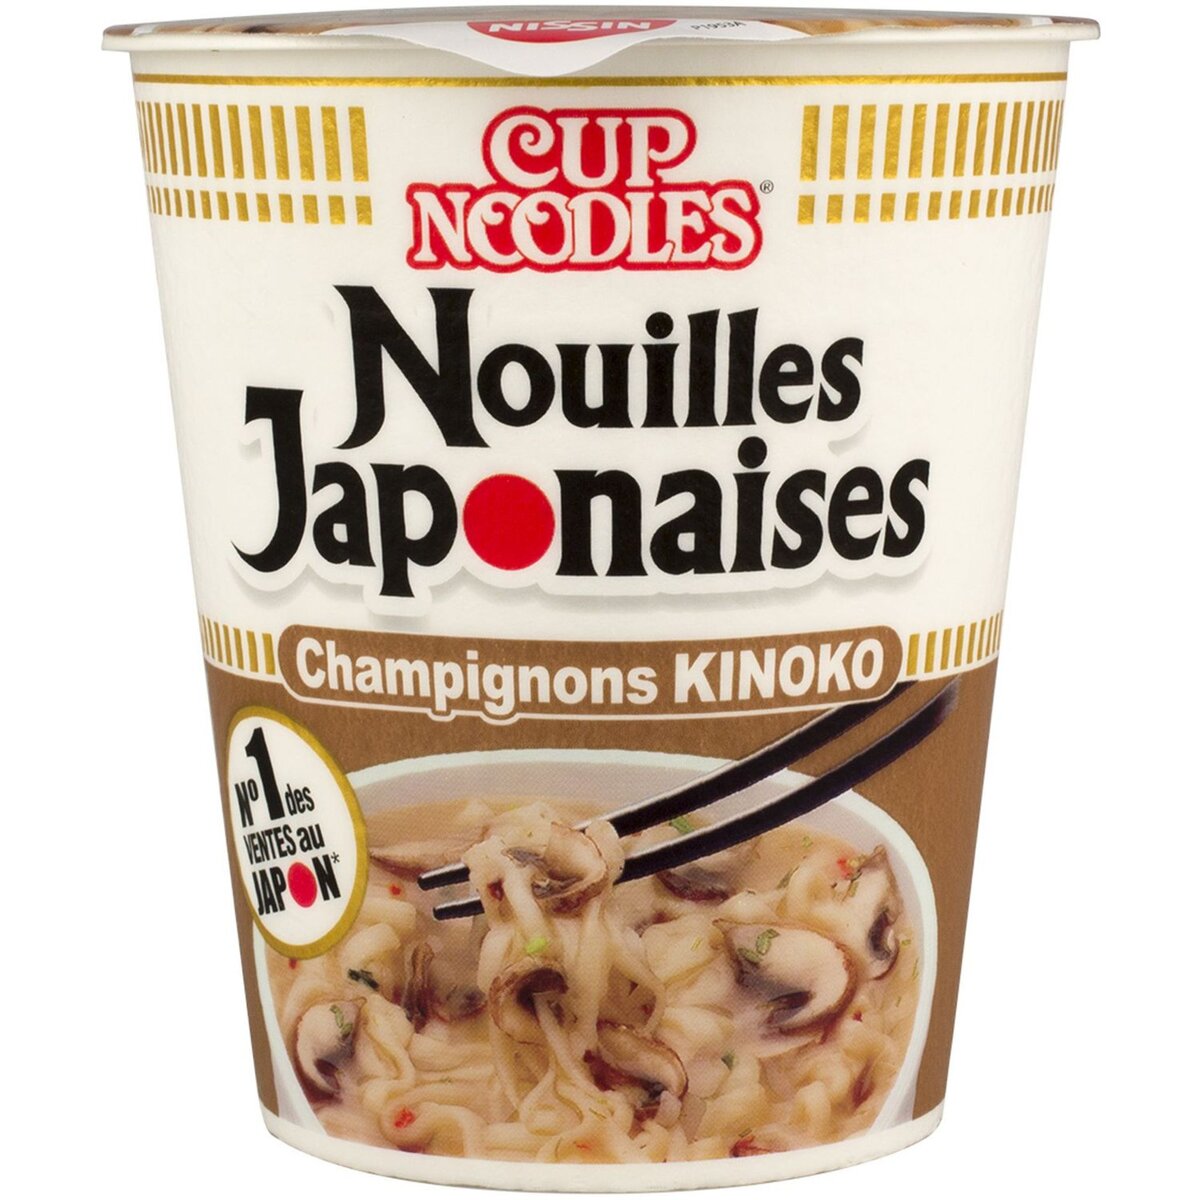 CUP NOODLES Nouilles japonaises aux champignons kinoko 64g